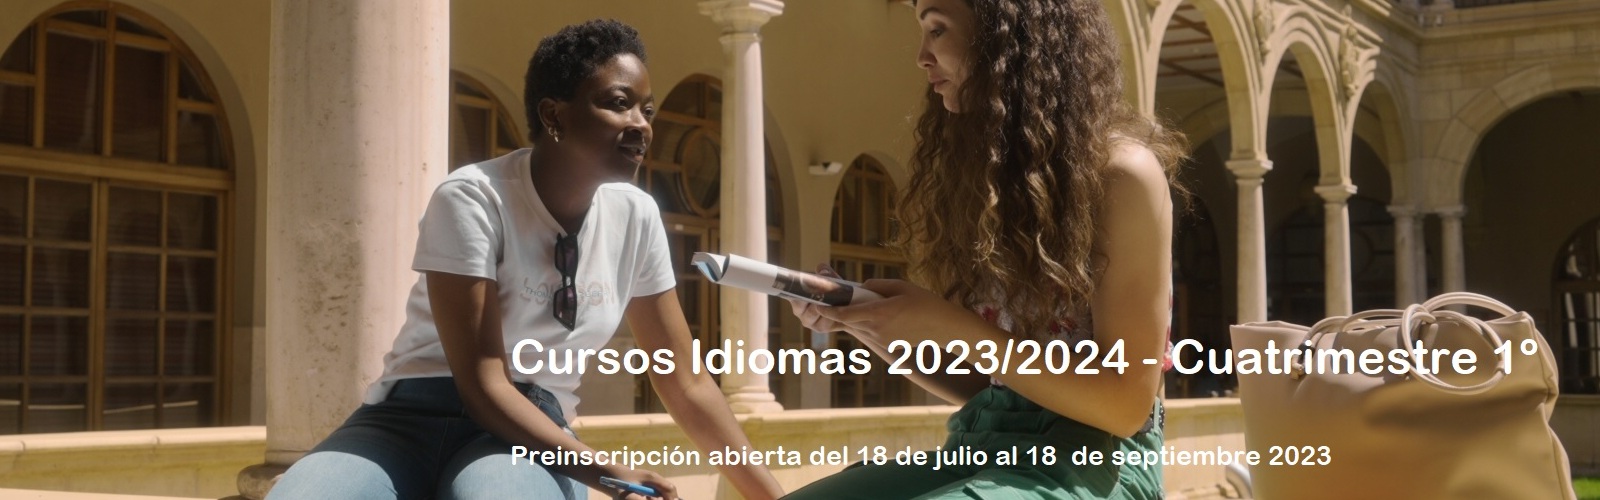 La Universidad de Murcia abre la inscripción para sus cursos de idiomas, que amplían la oferta en modalidad online